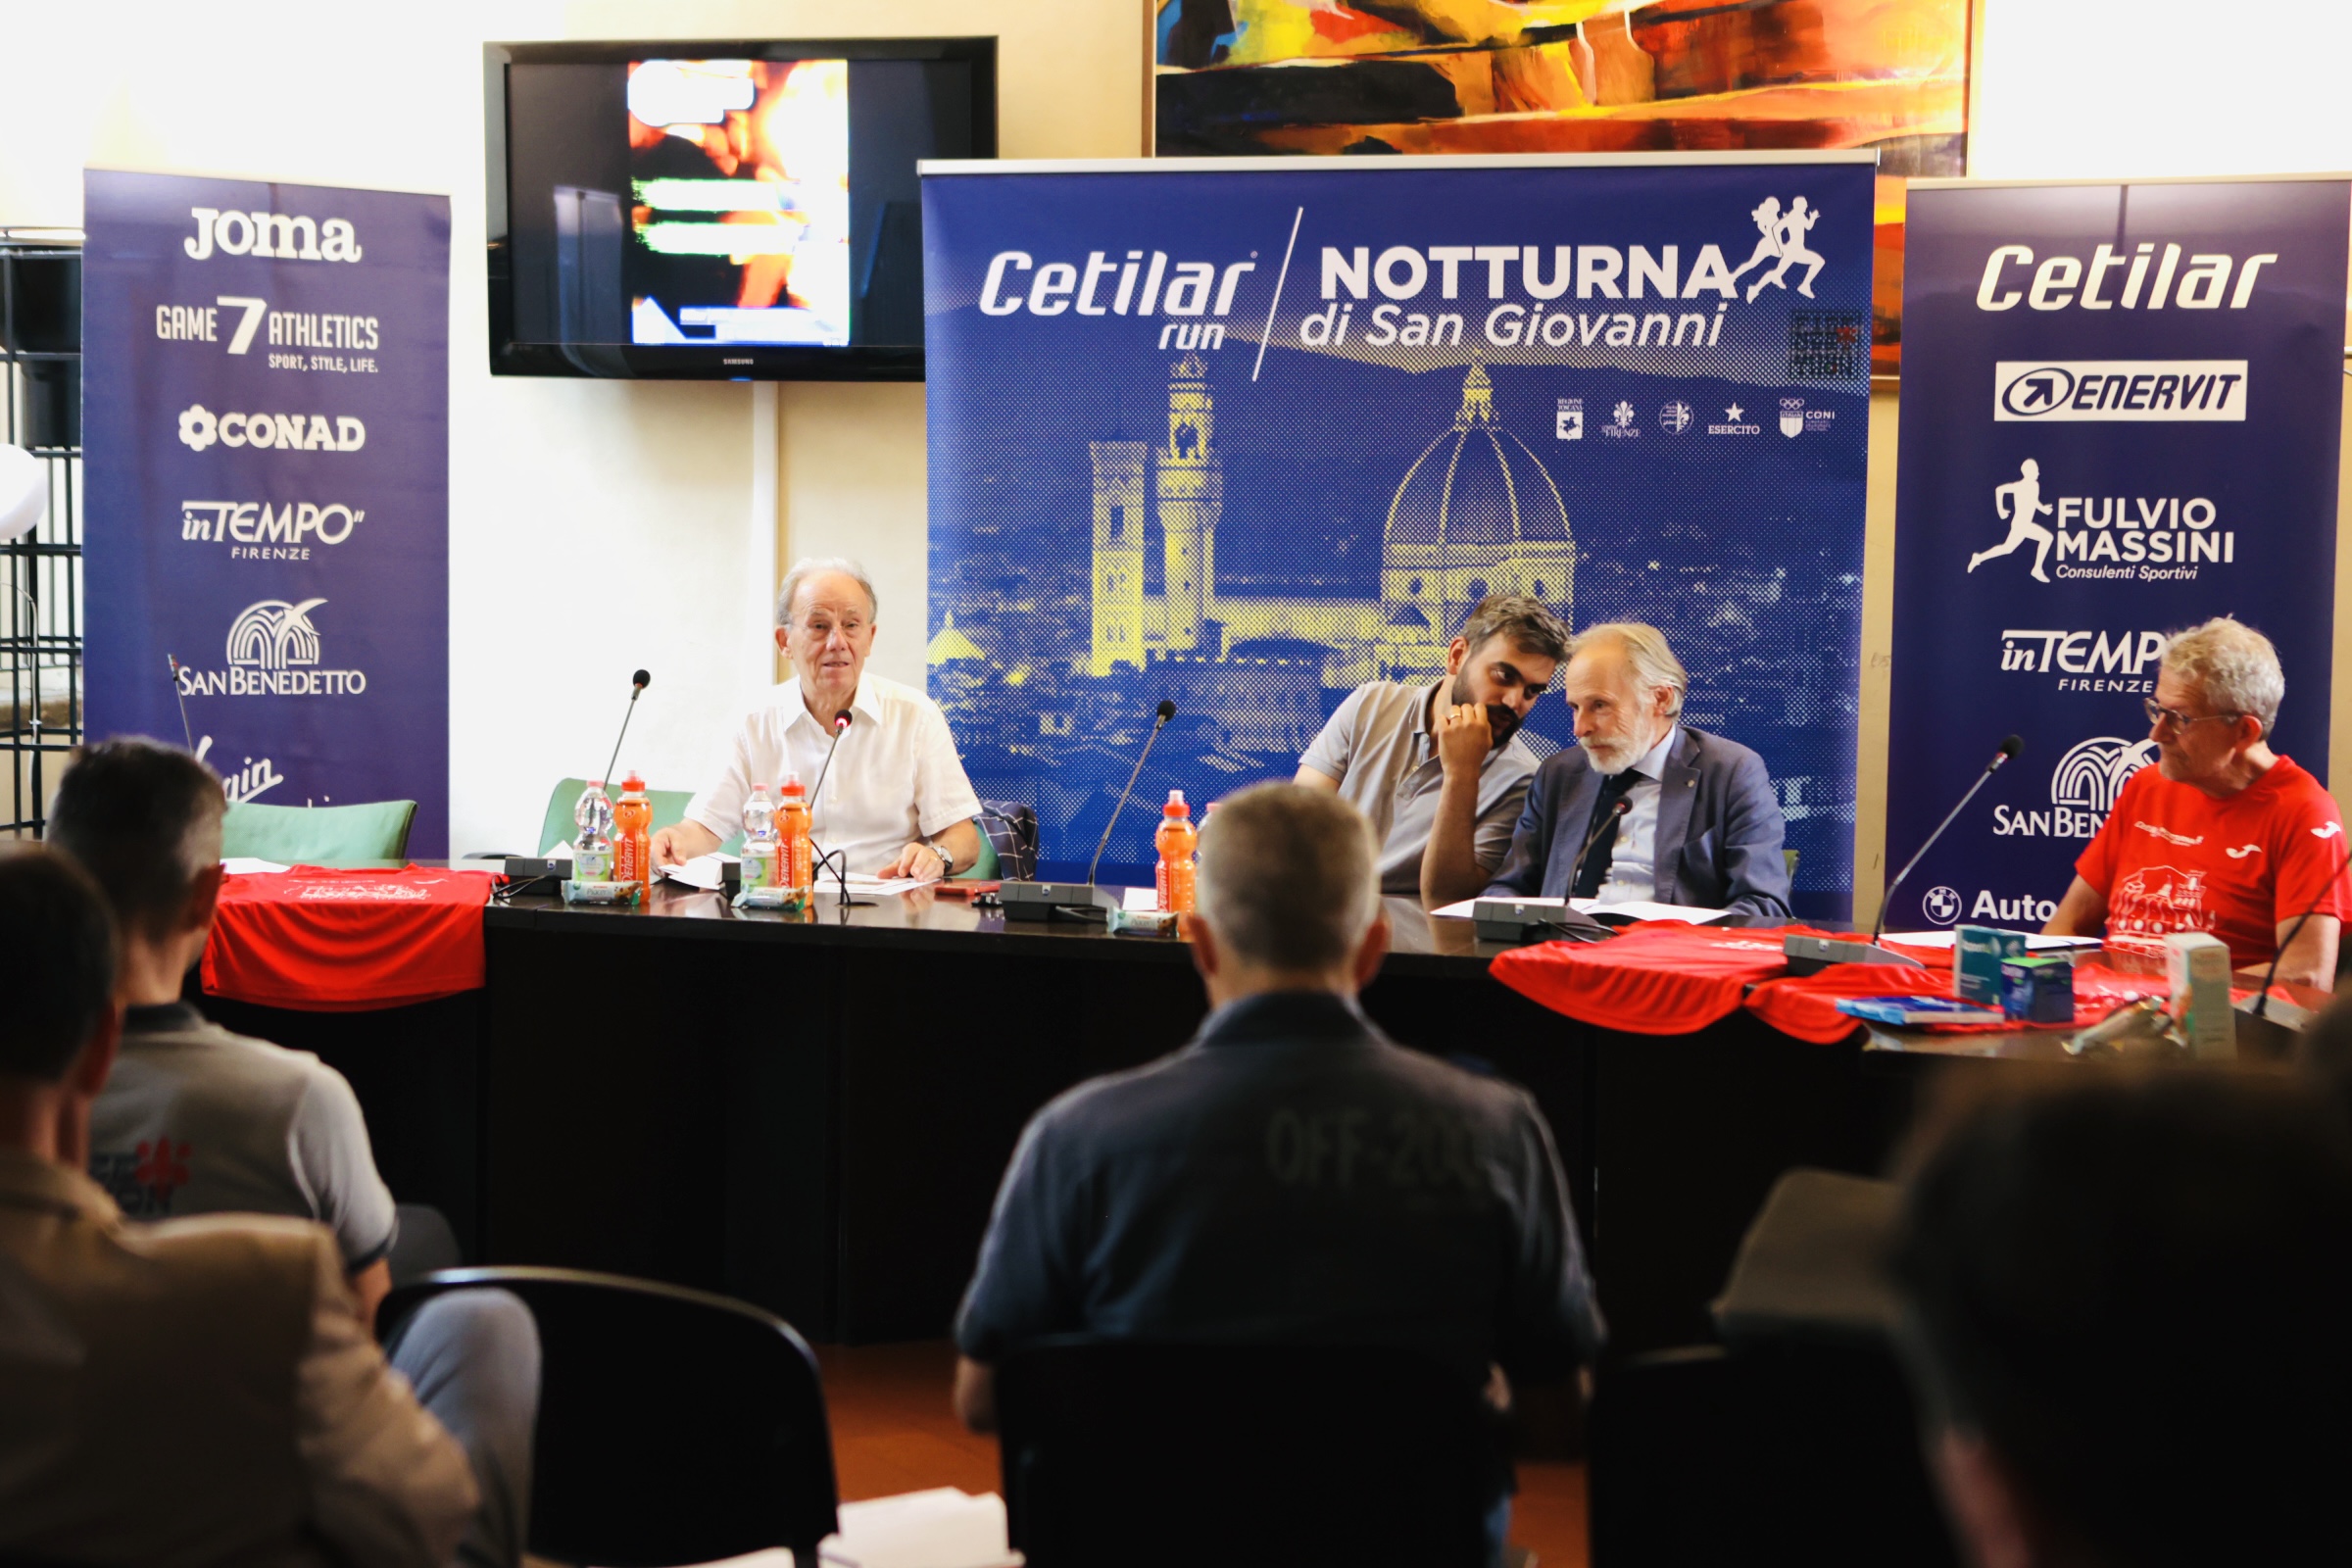 Presentazione Cetilar Run Notturna di San Giovanni (fonte foto comunicato stampa)